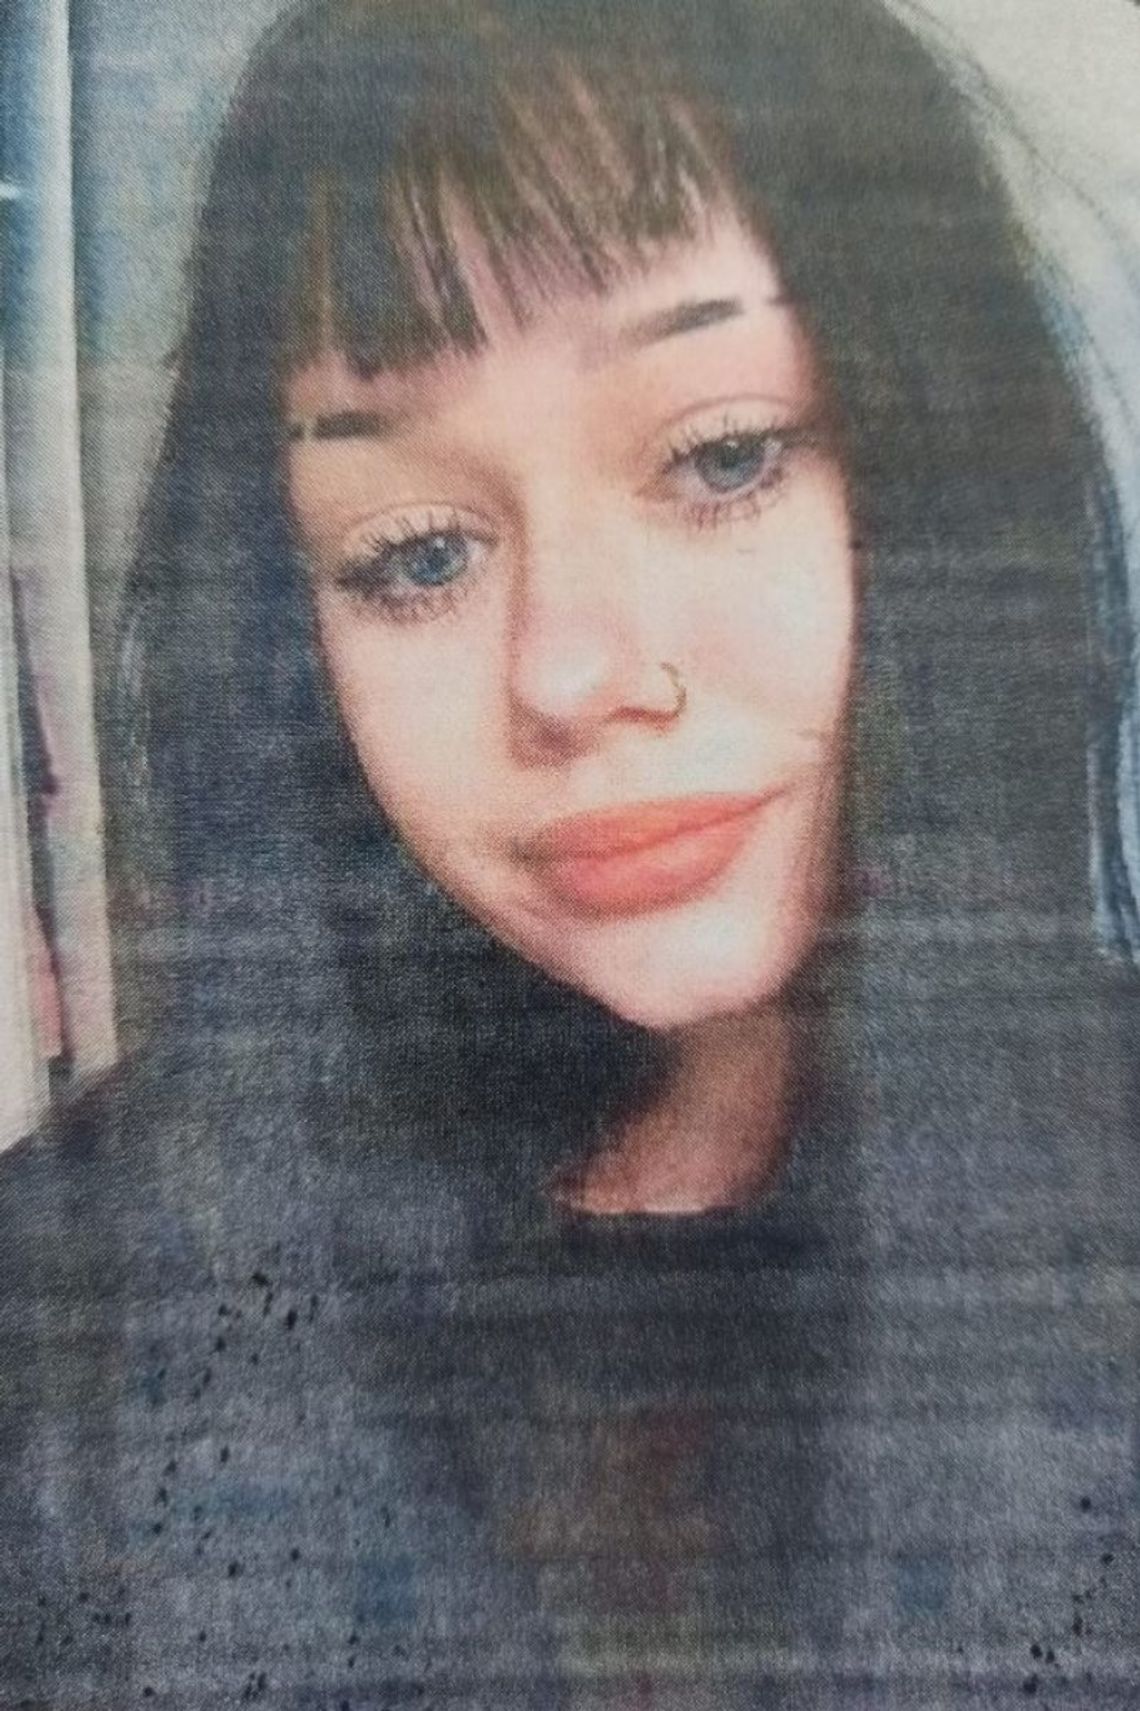 Śląscy policjanci prowadzą poszukiwania 17-letniej Julii Majcherczyk. Po raz ostatni była widziana 5 lutego